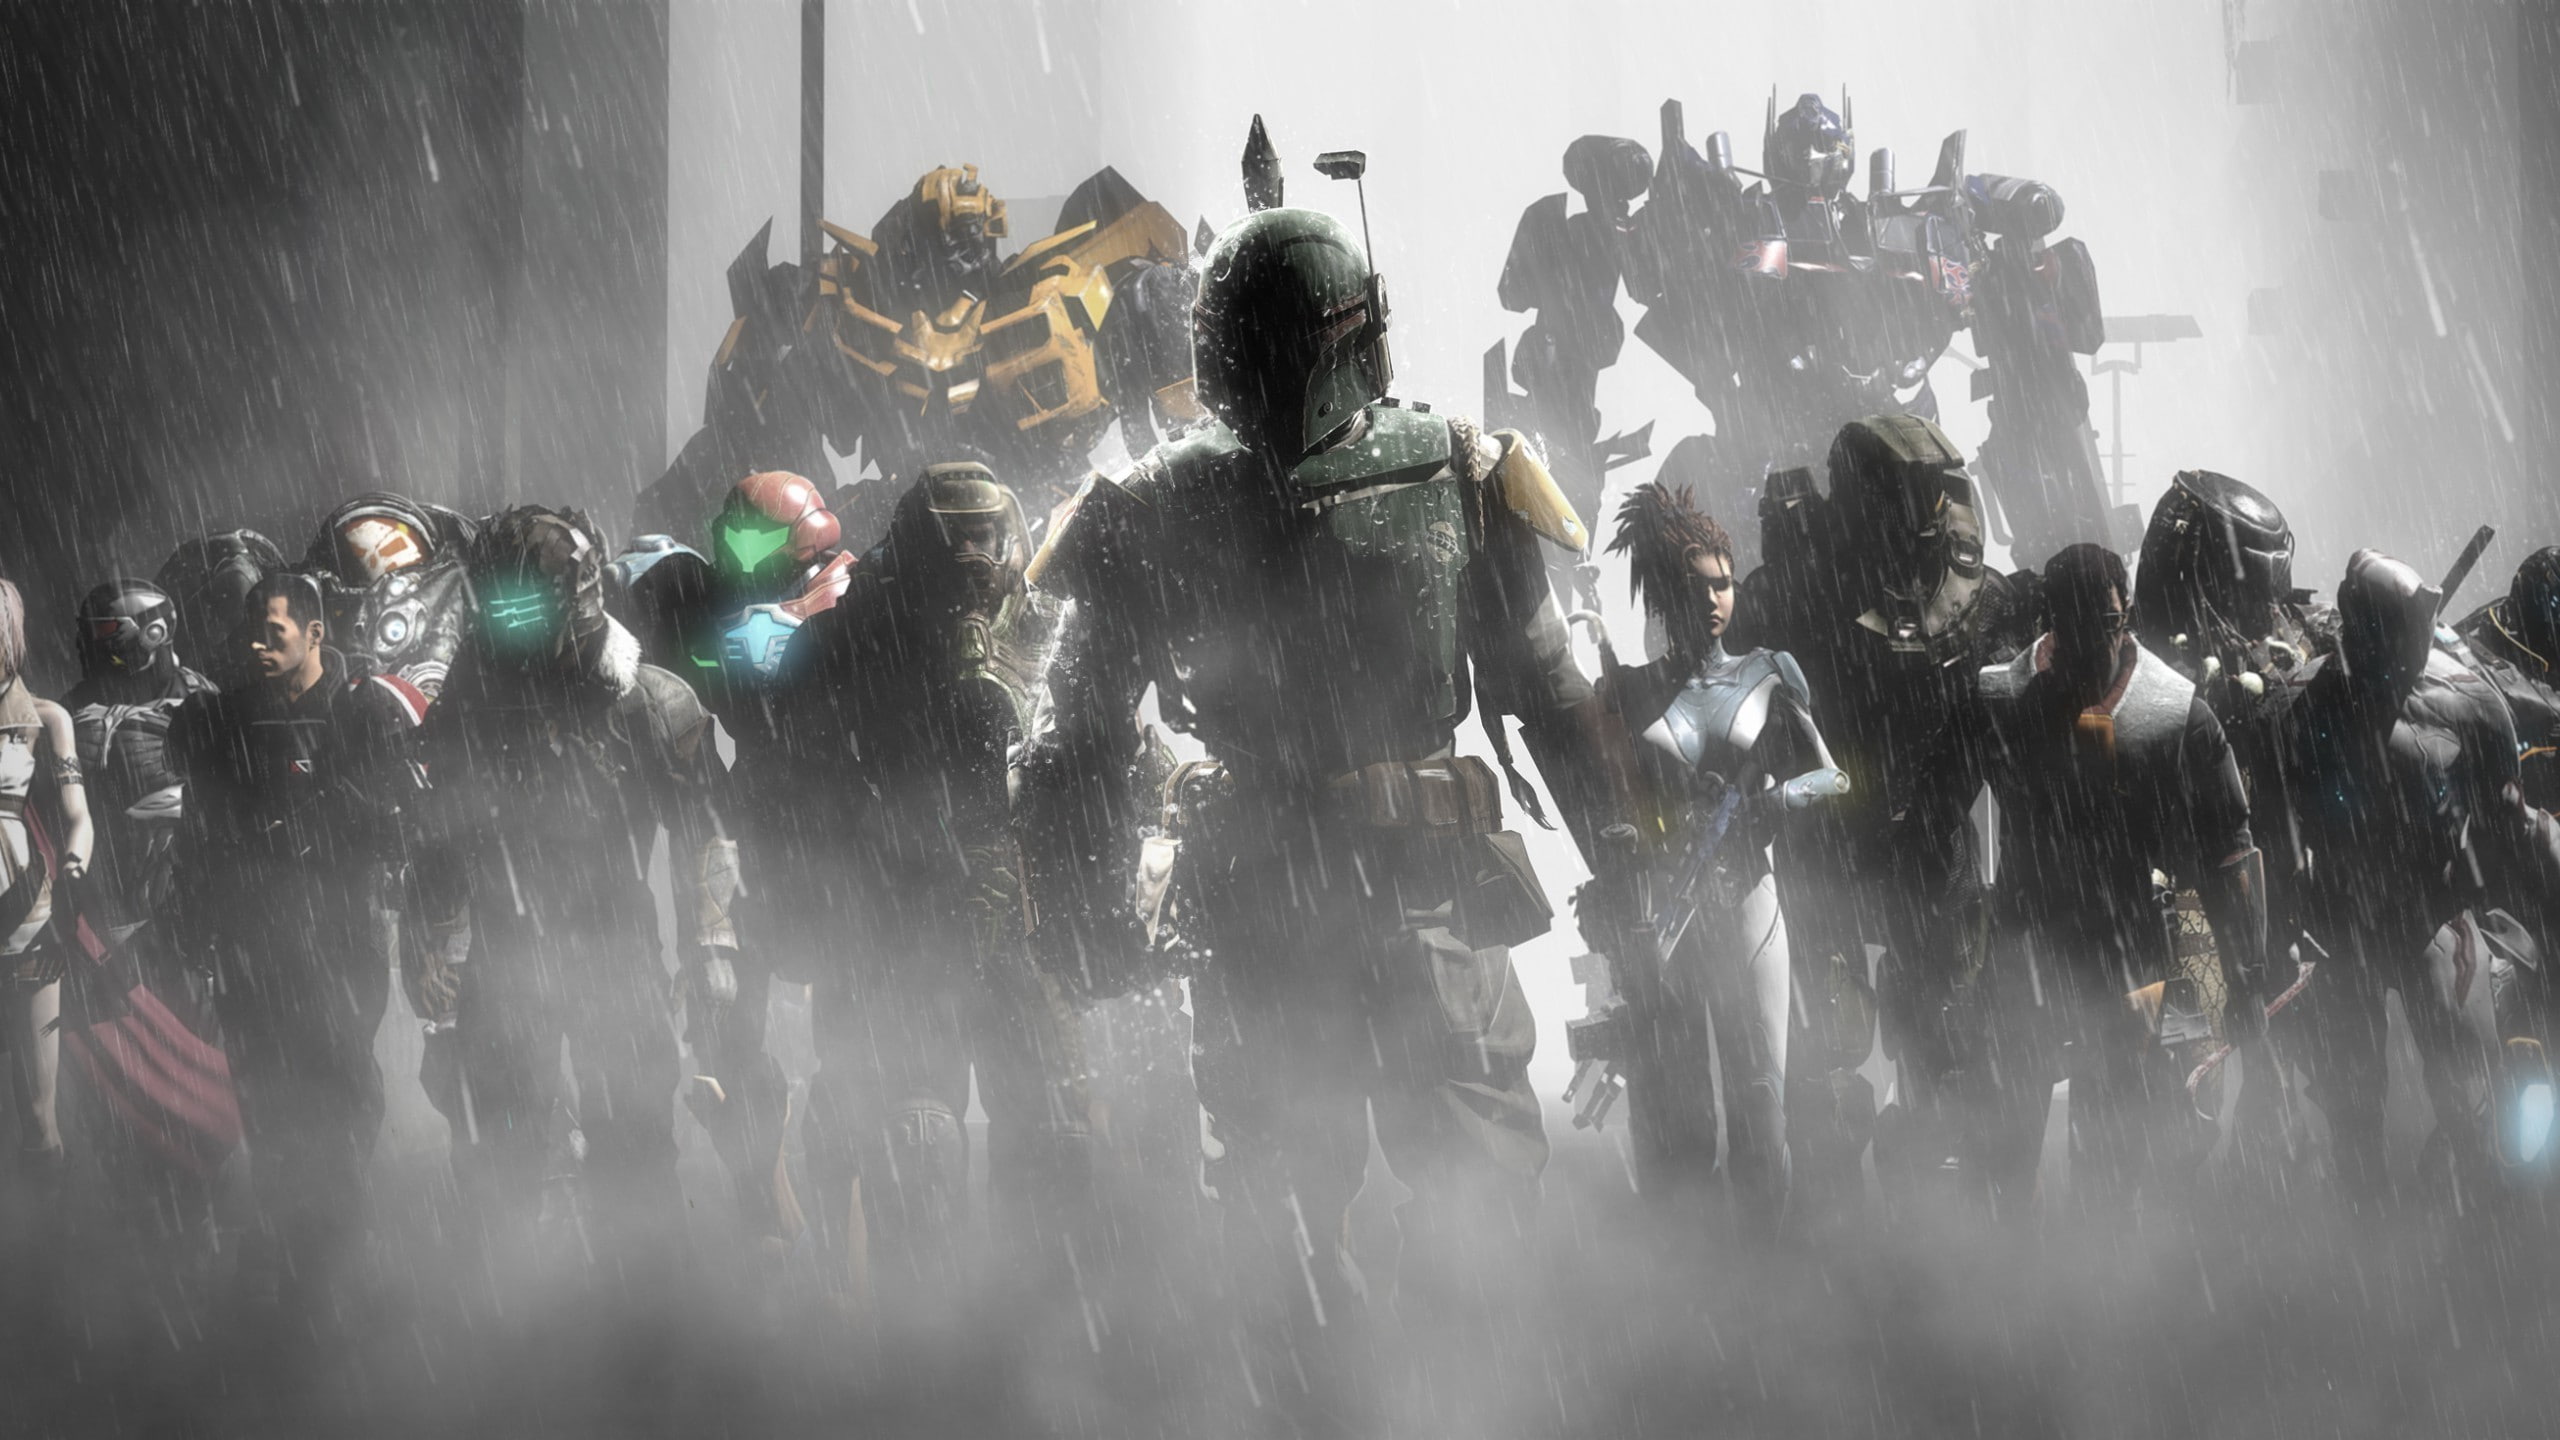 antiheroes predator movie transformers optimus prime, group of people